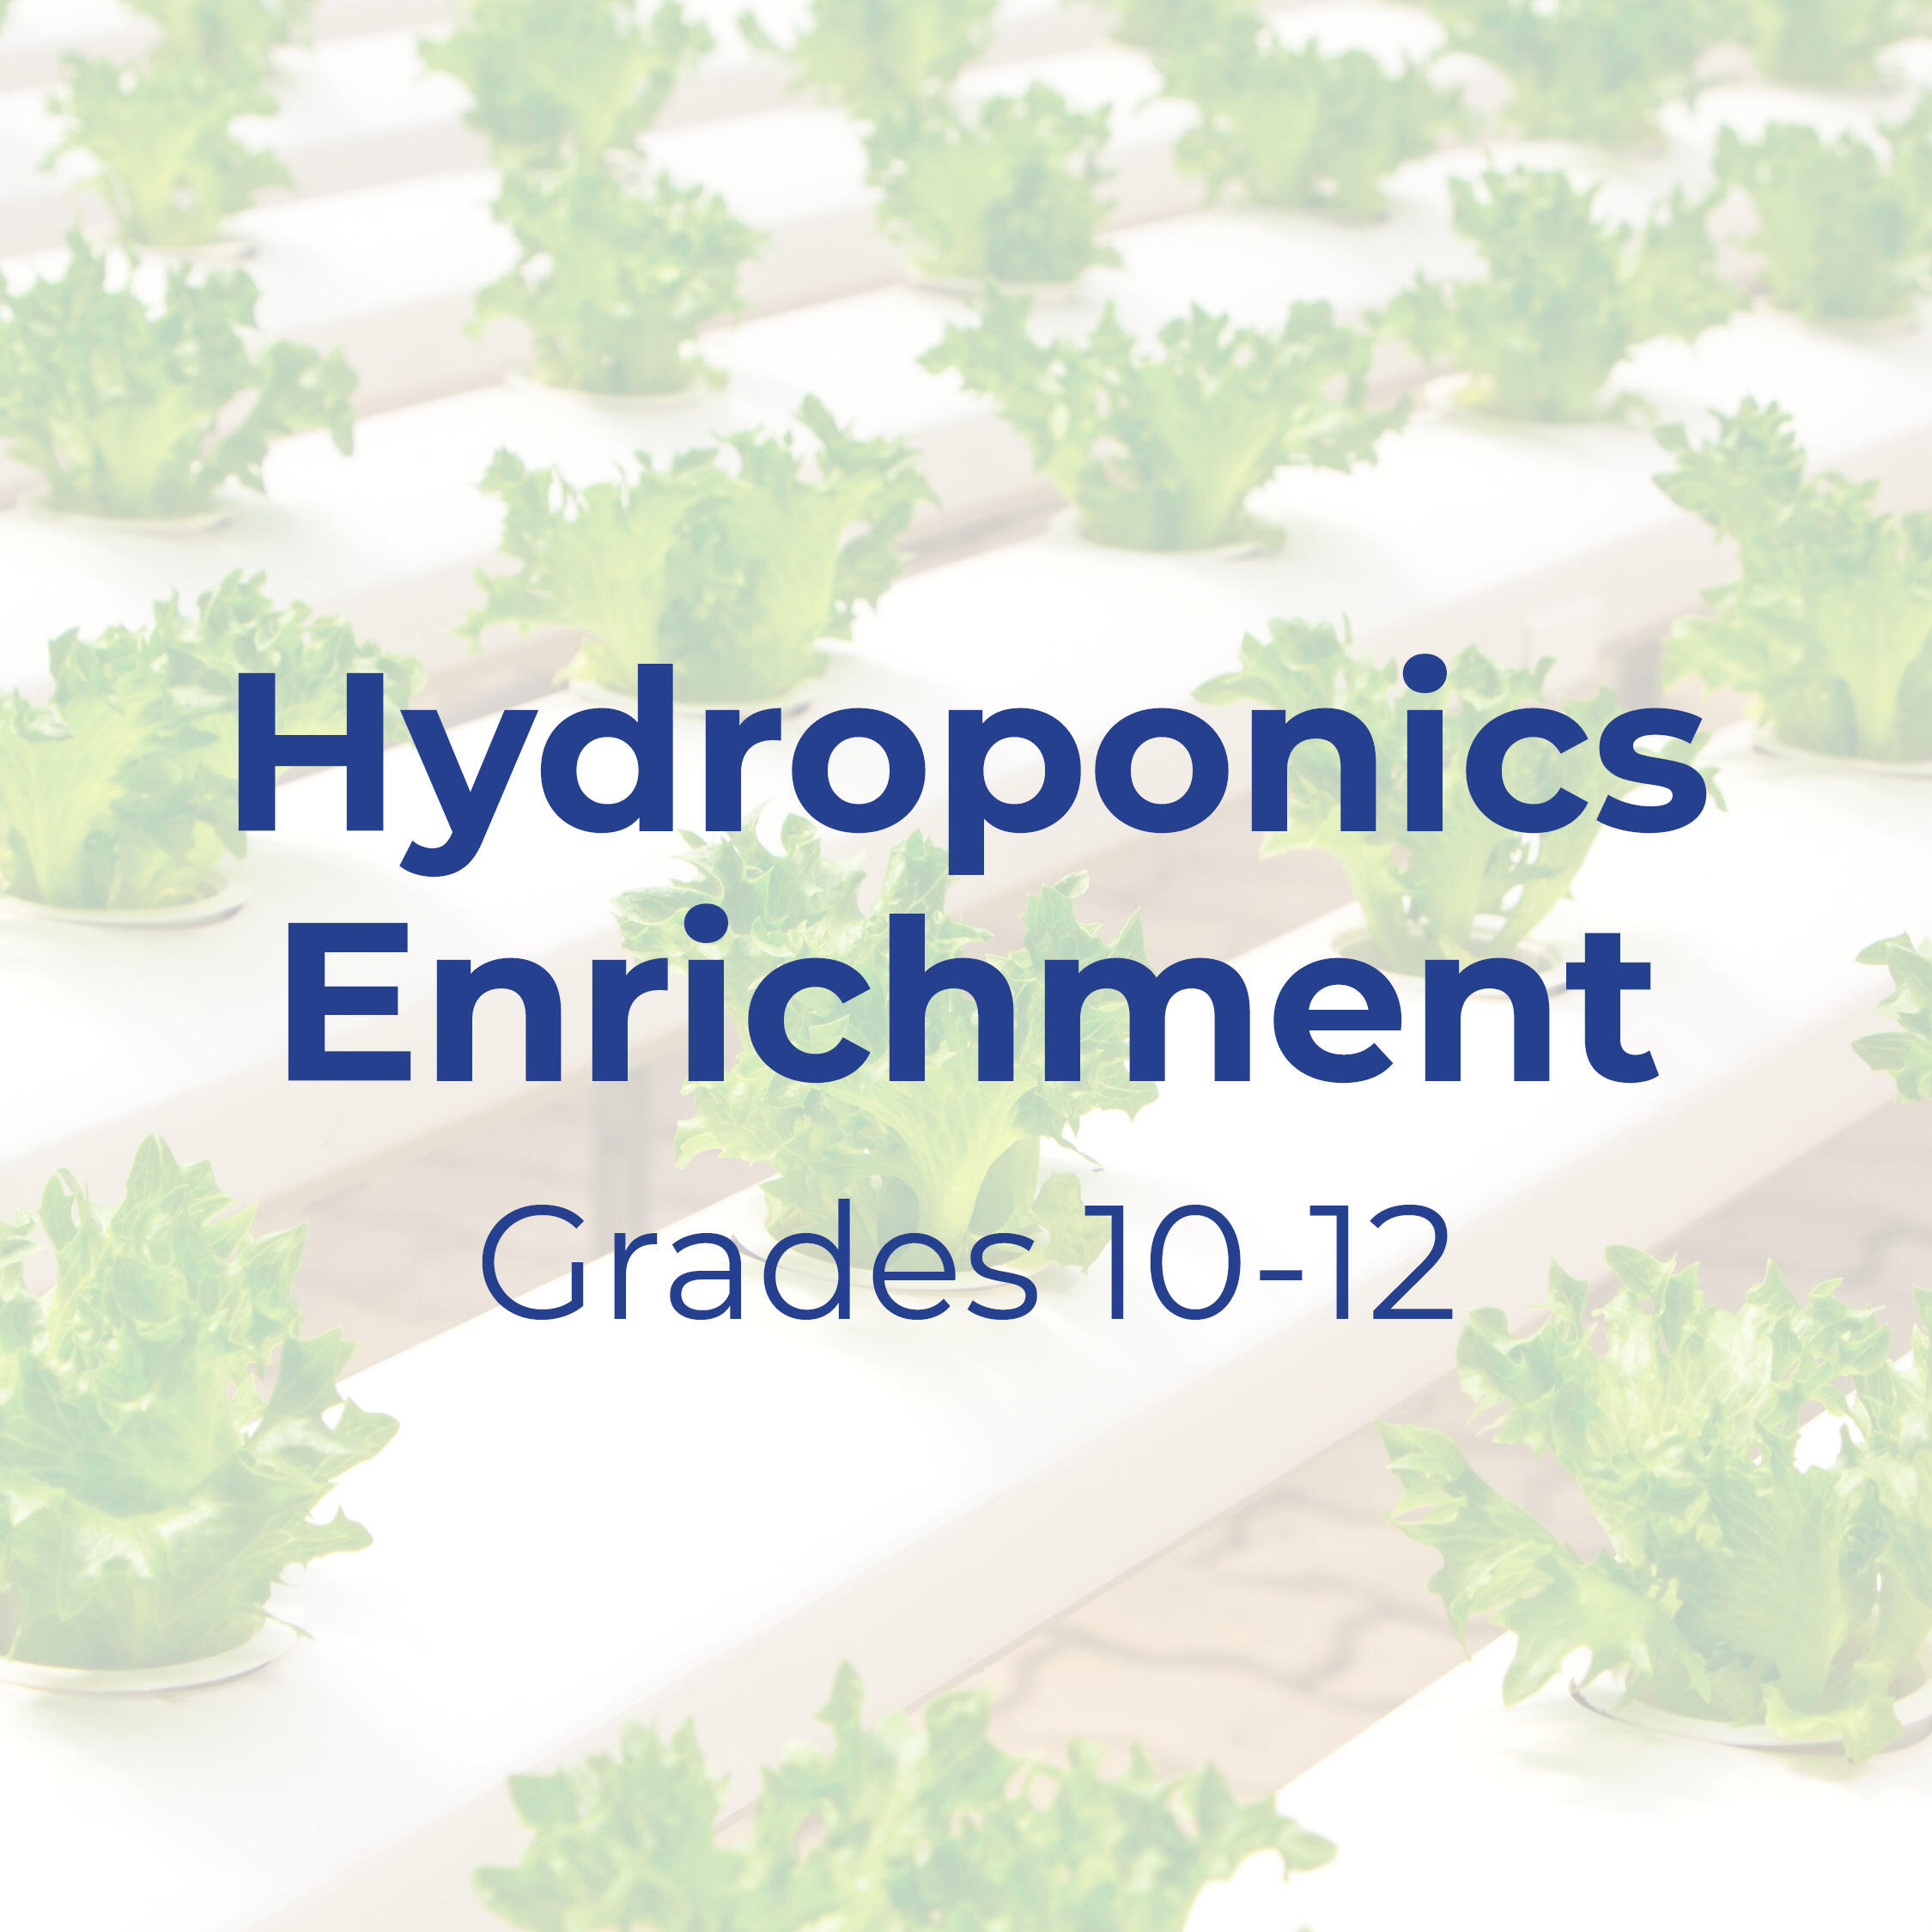 Text that reads "Hydroponics Enrichment: Grades 10-12"